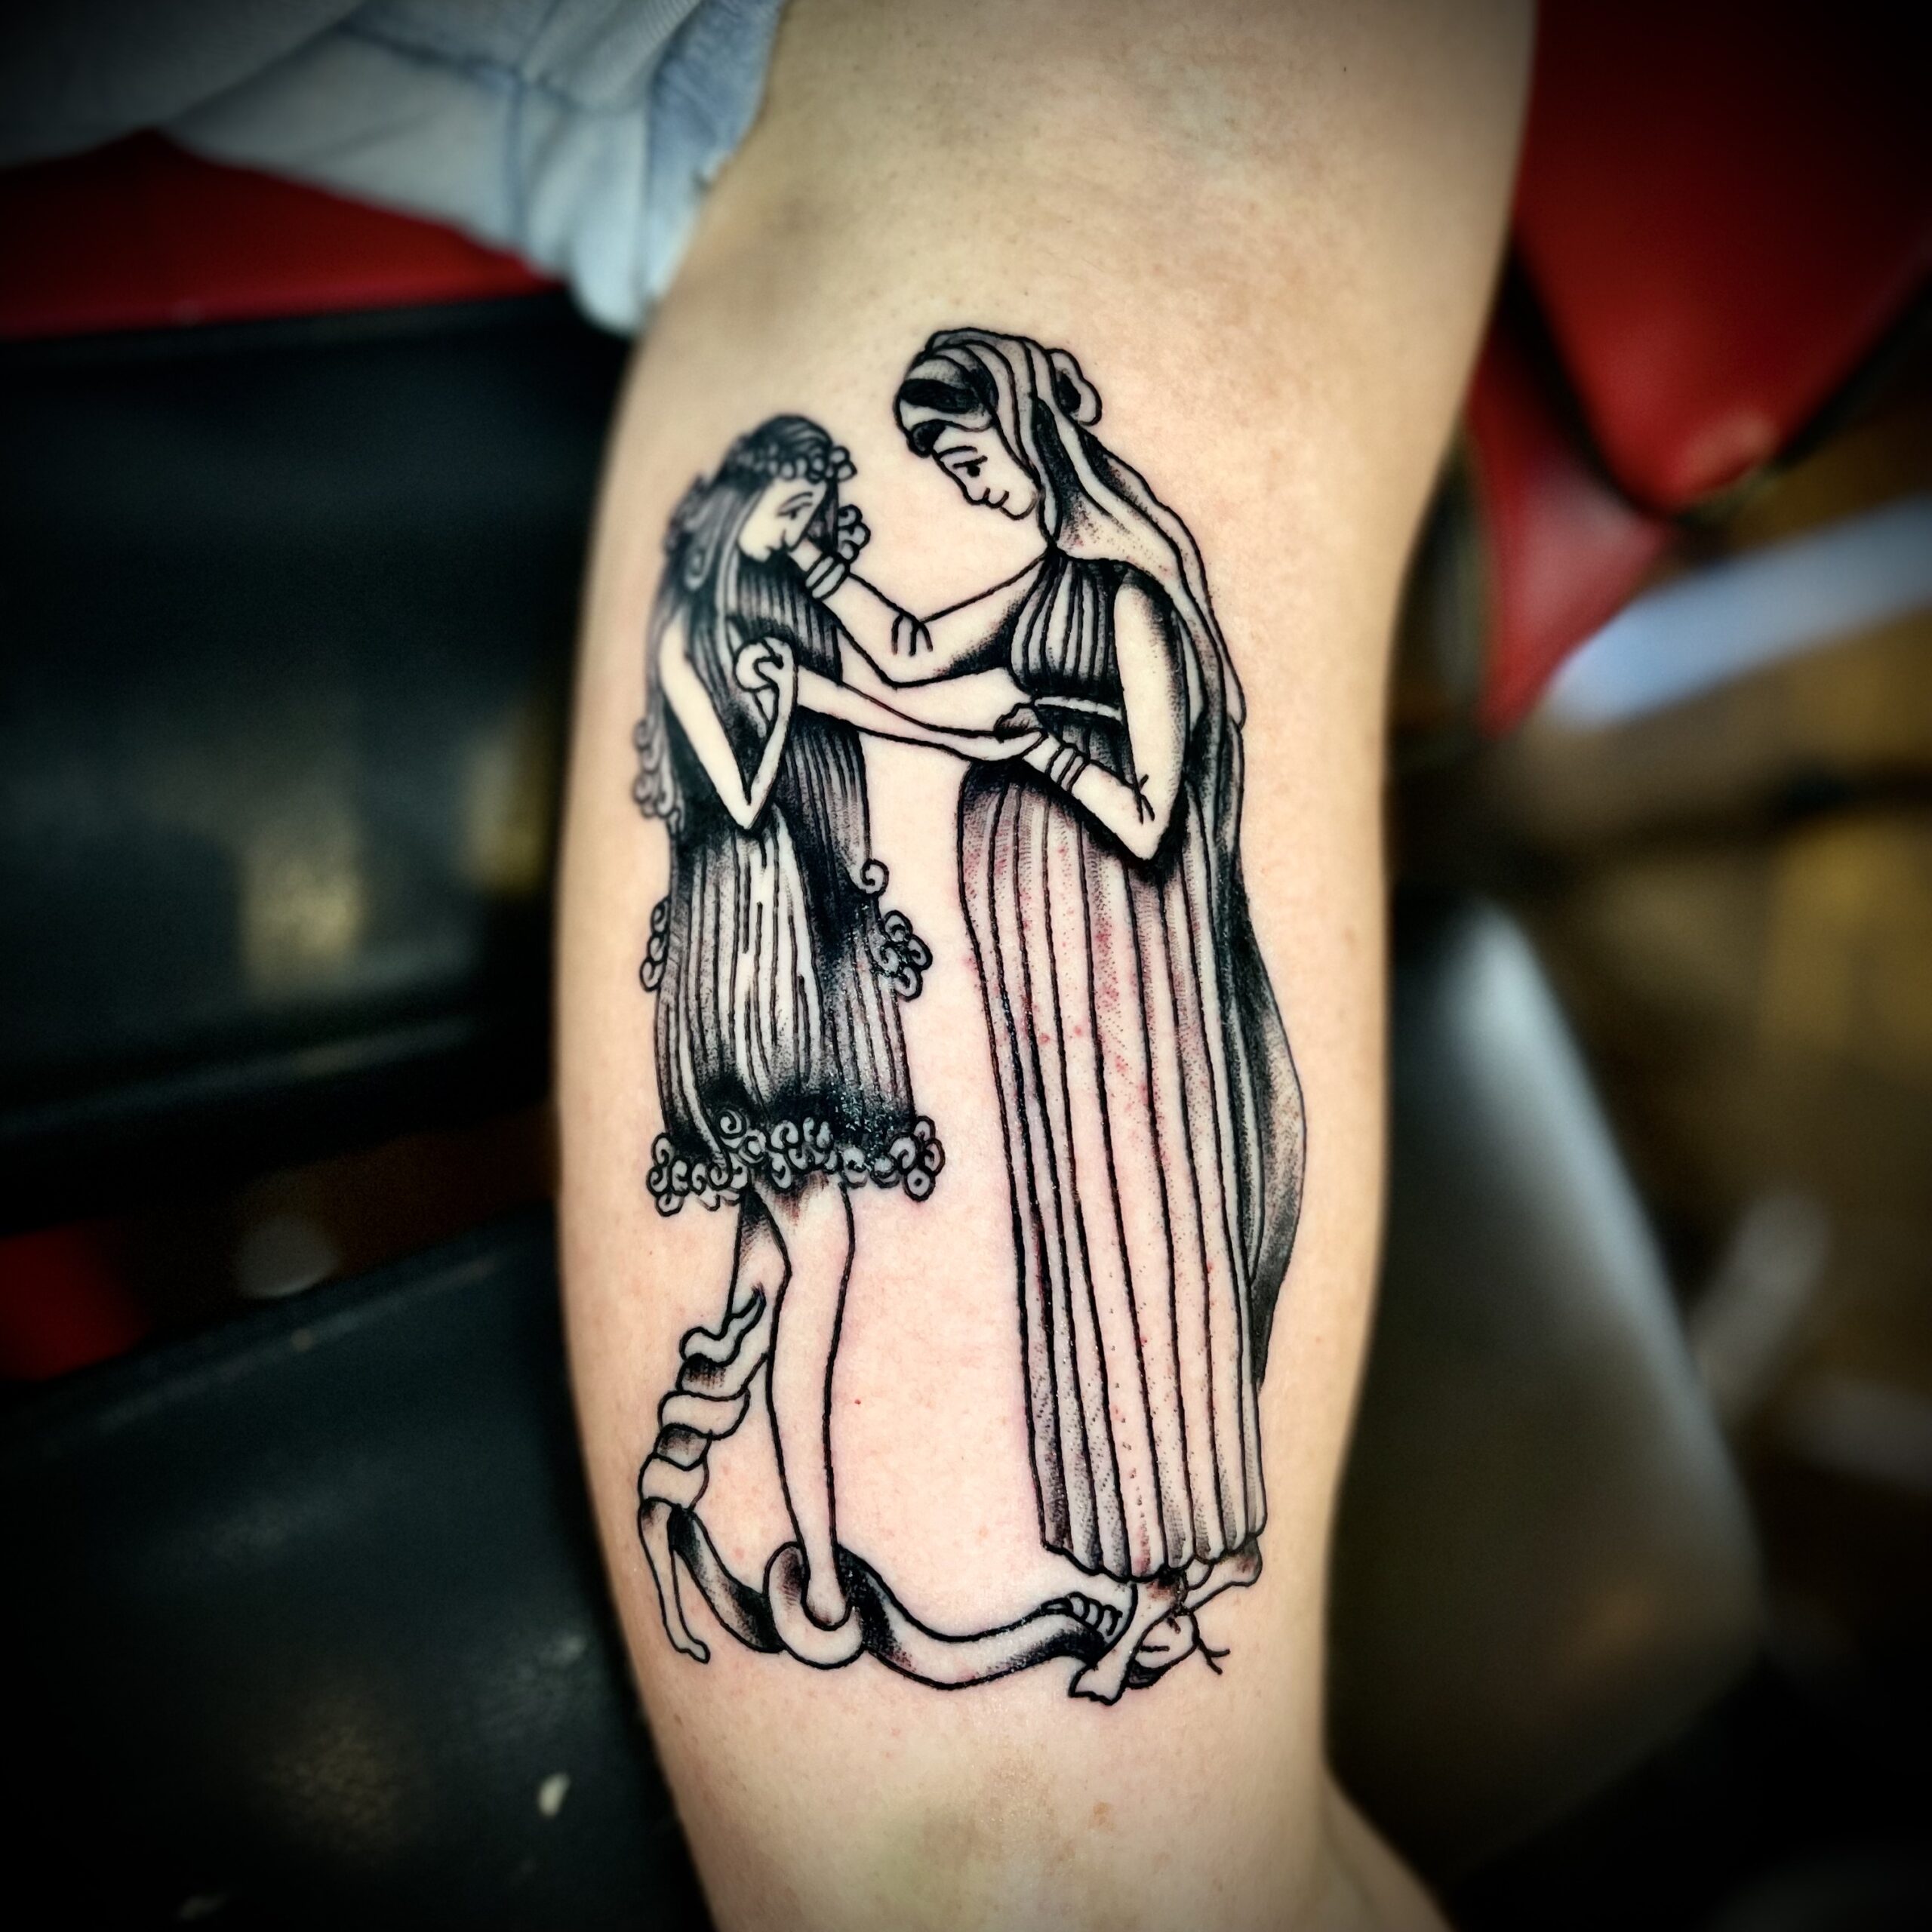 Tattoo of two women from Dallas tattoo artist